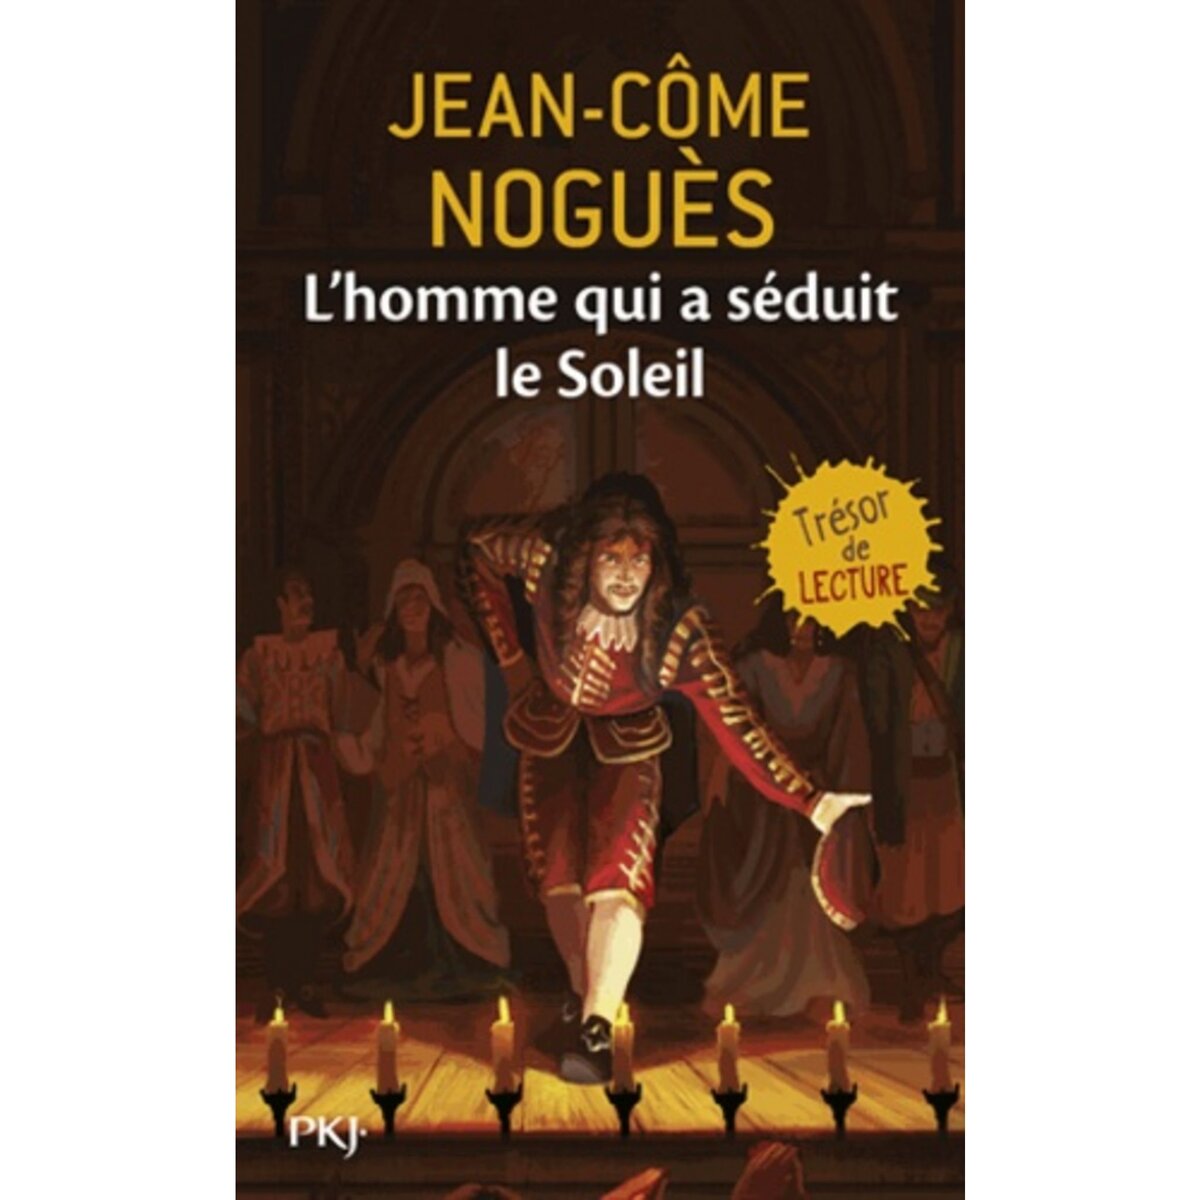  L'HOMME QUI A SEDUIT LE SOLEIL. 1661, QUAND MOLIERE SORT DE L'OMBRE..., Noguès Jean-Côme